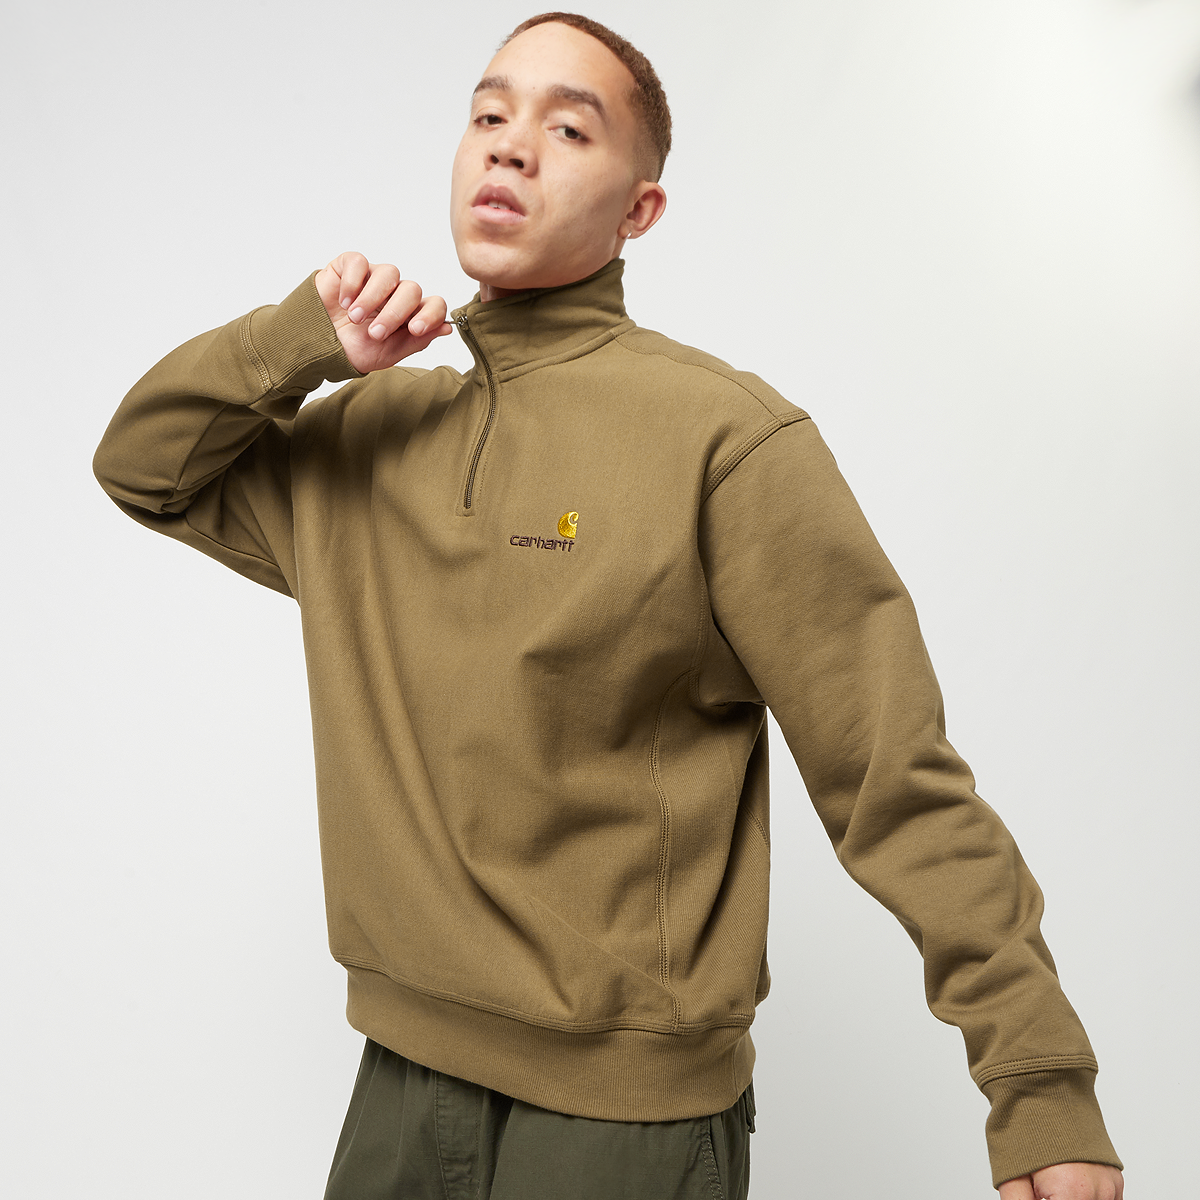 Carhartt WIP Half Zip American Script Sweatshirt Hooded vesten Kleding hamilton brown maat: XL beschikbare maaten:S M L XL